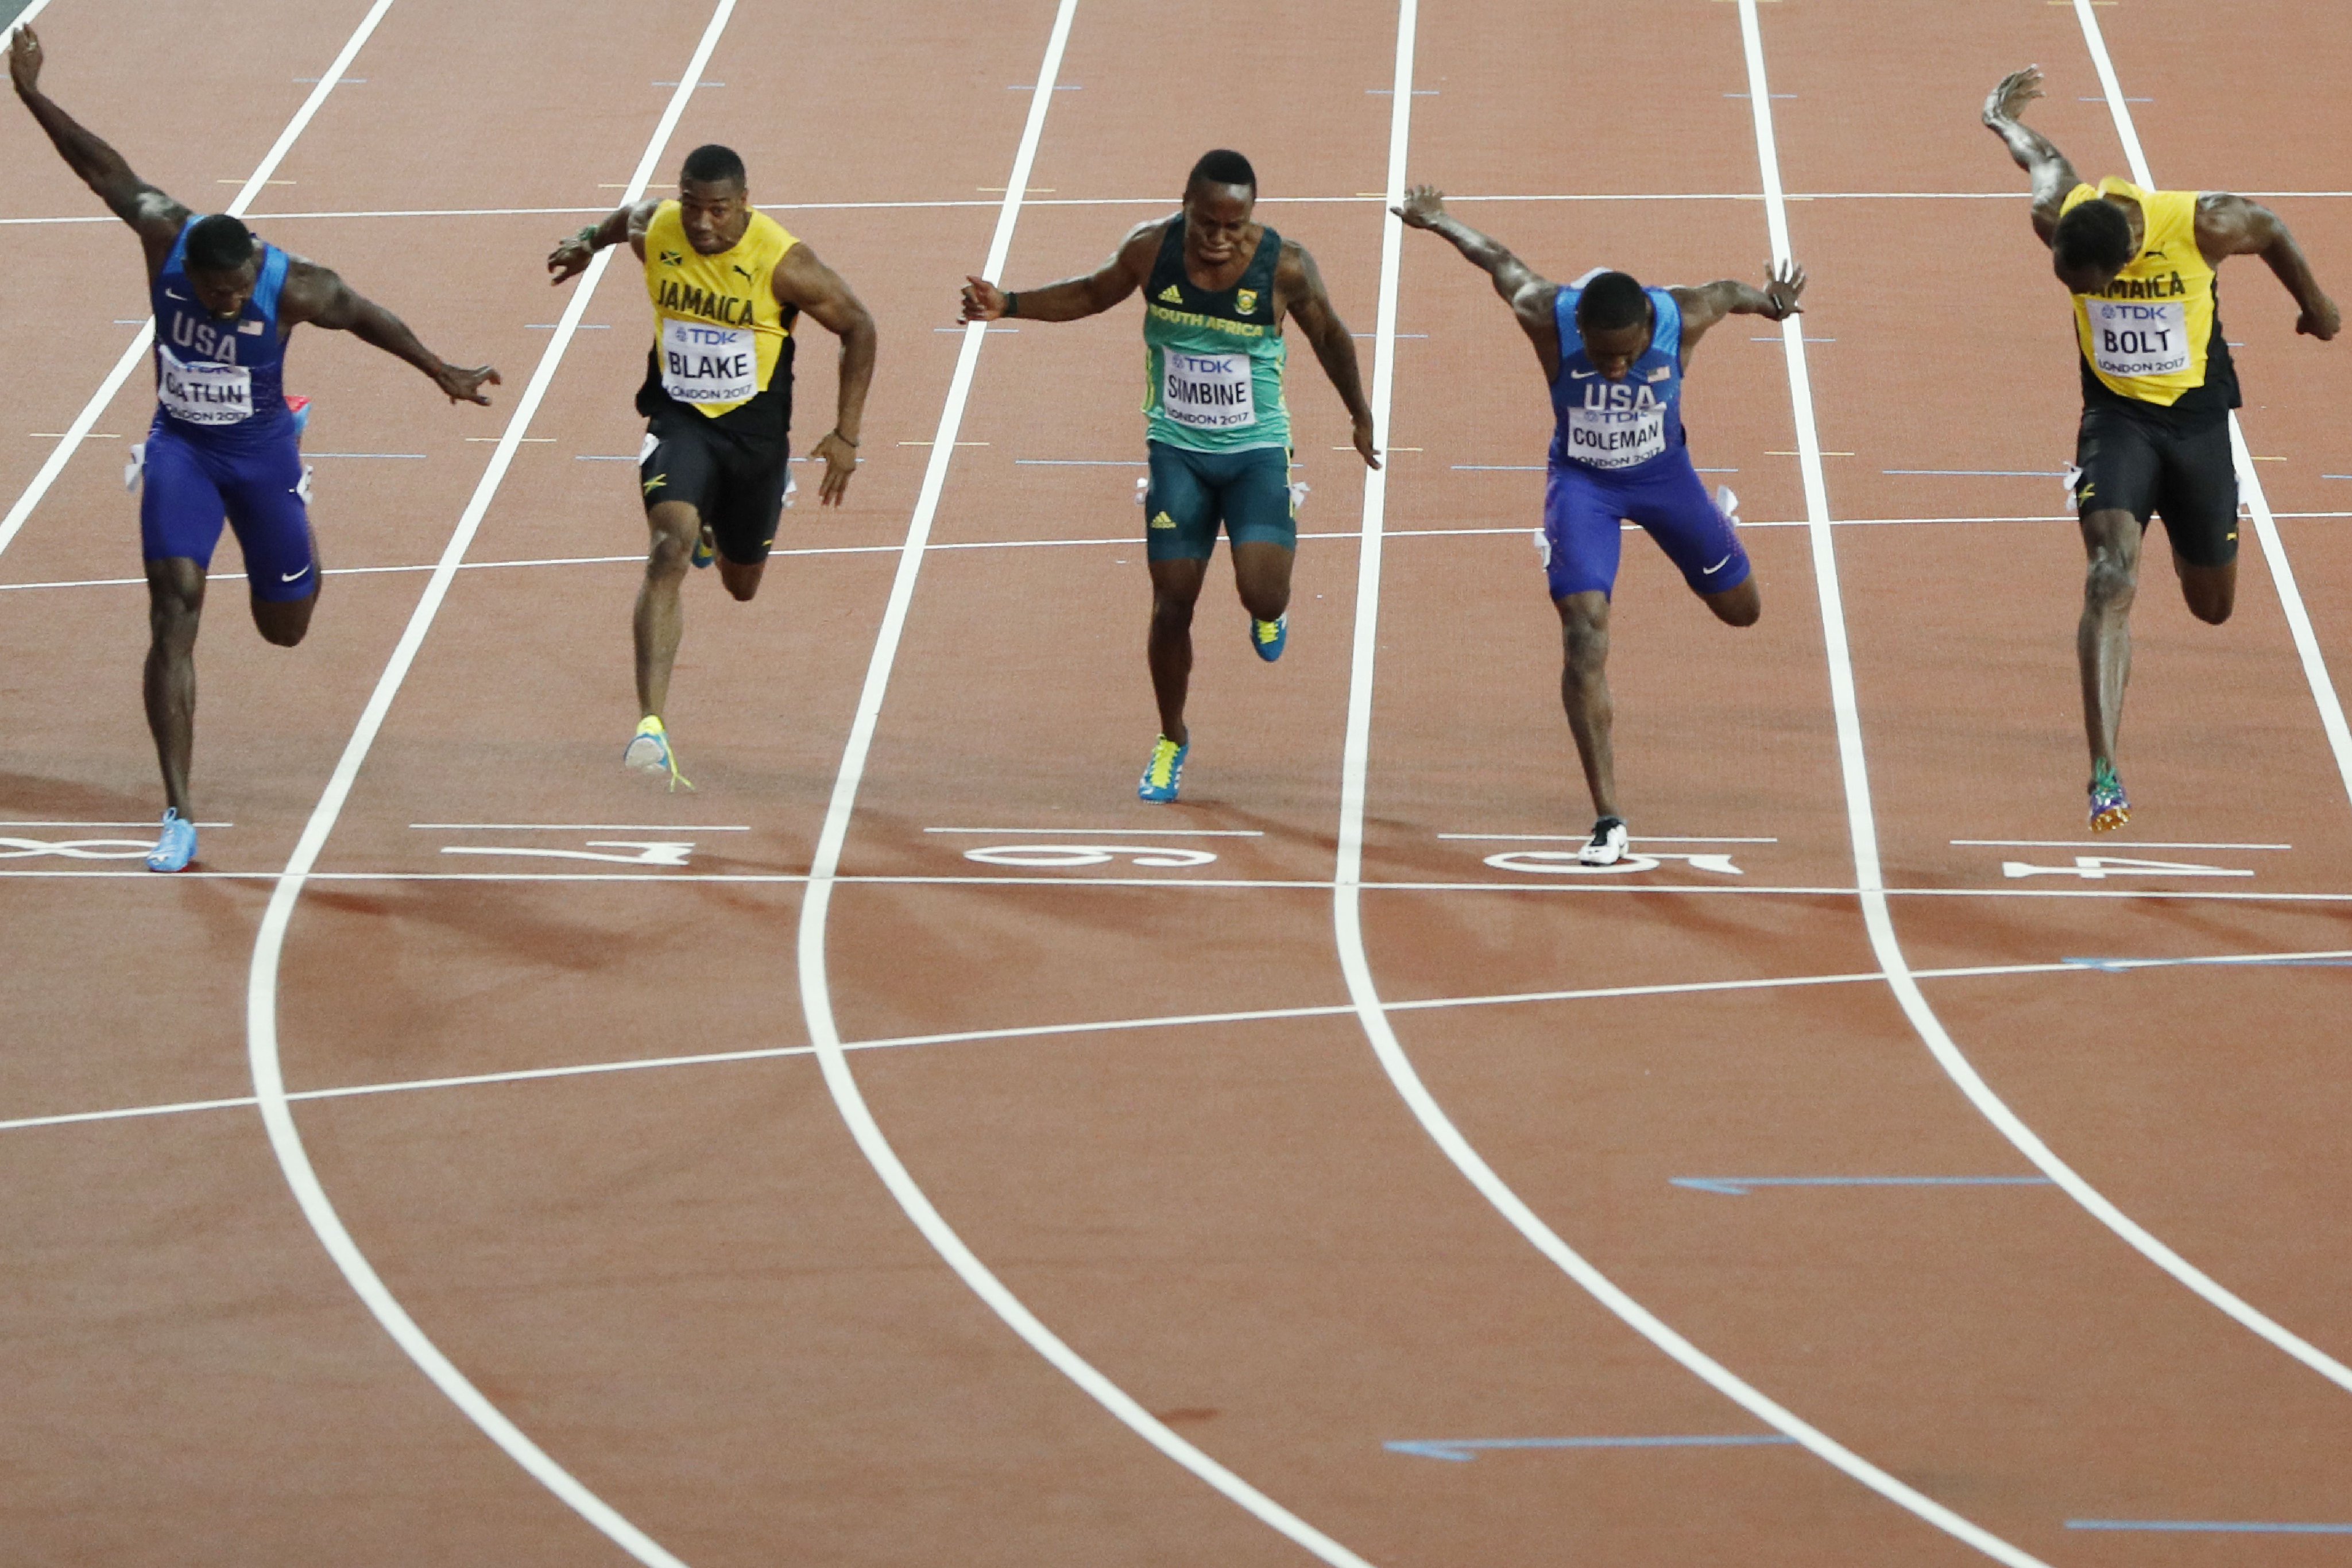 1 семеро спортсменов. Усейн болт 200 метров. Легкая атлетика 100 метров. Усейн болт рекорд на 100 метров. Спринт 100м.